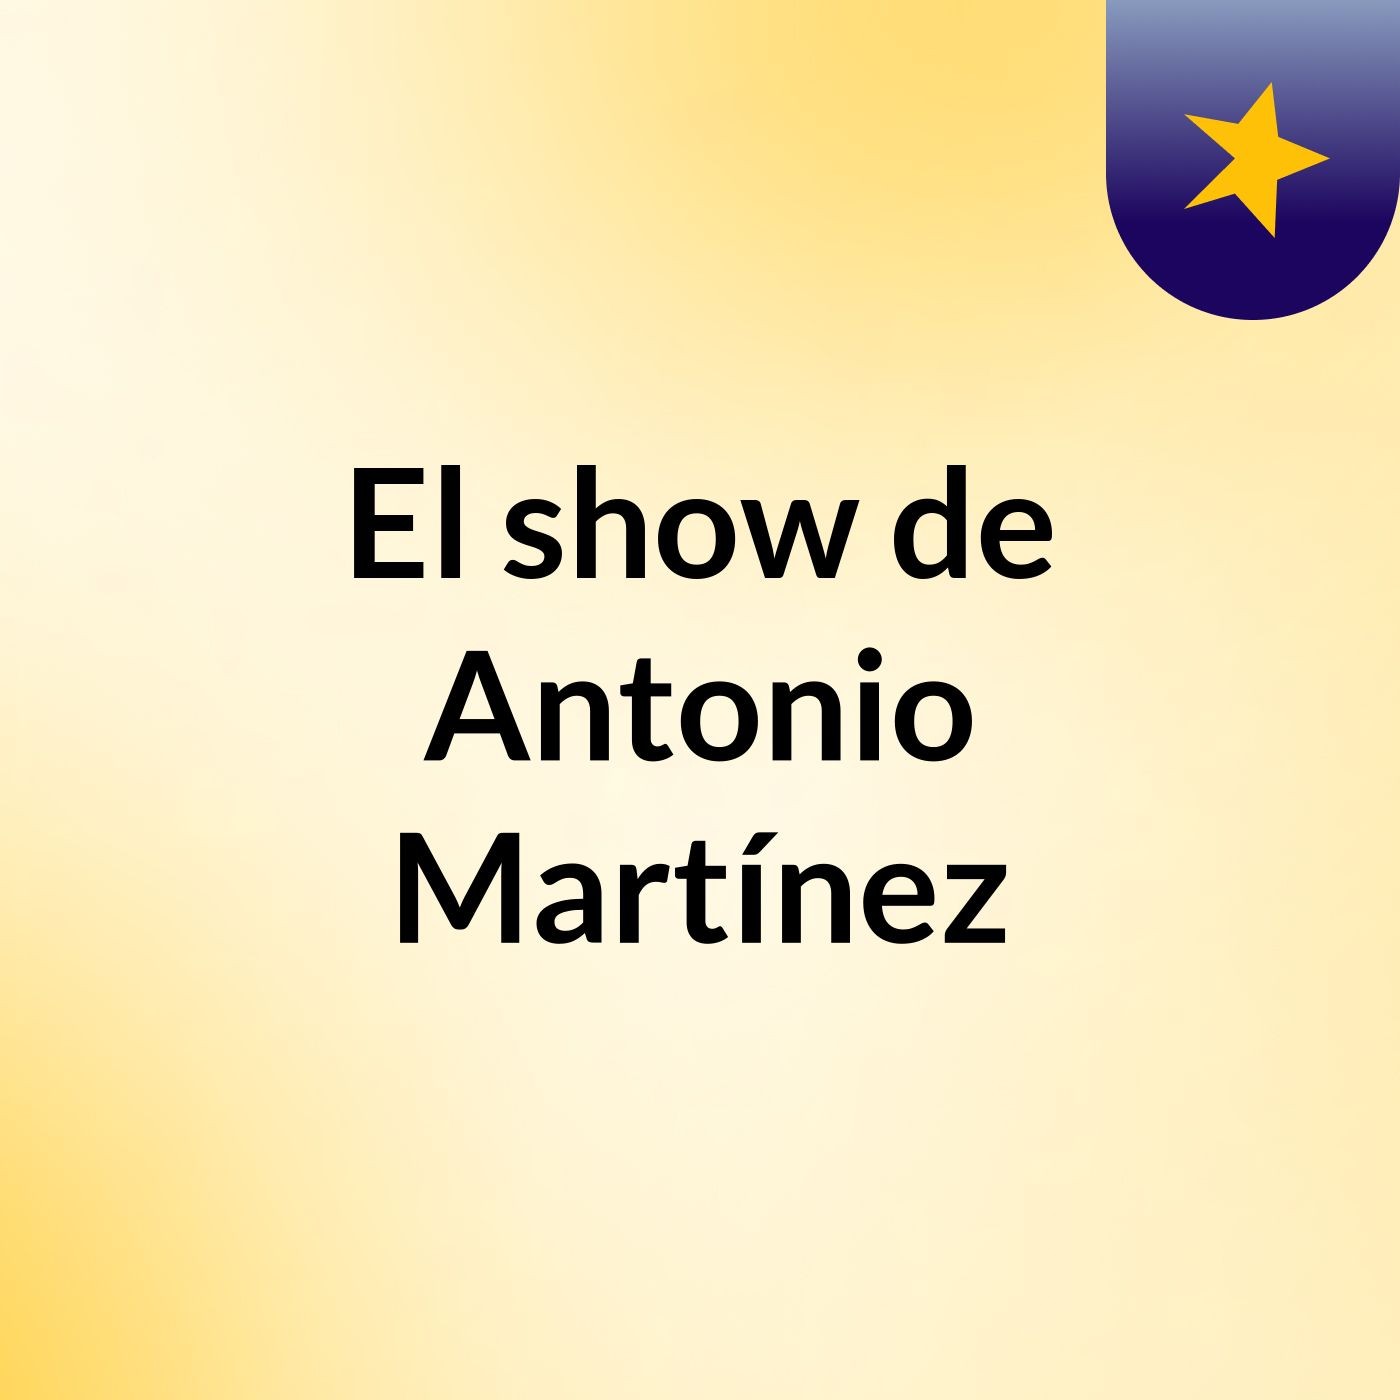 El show de Antonio Martínez